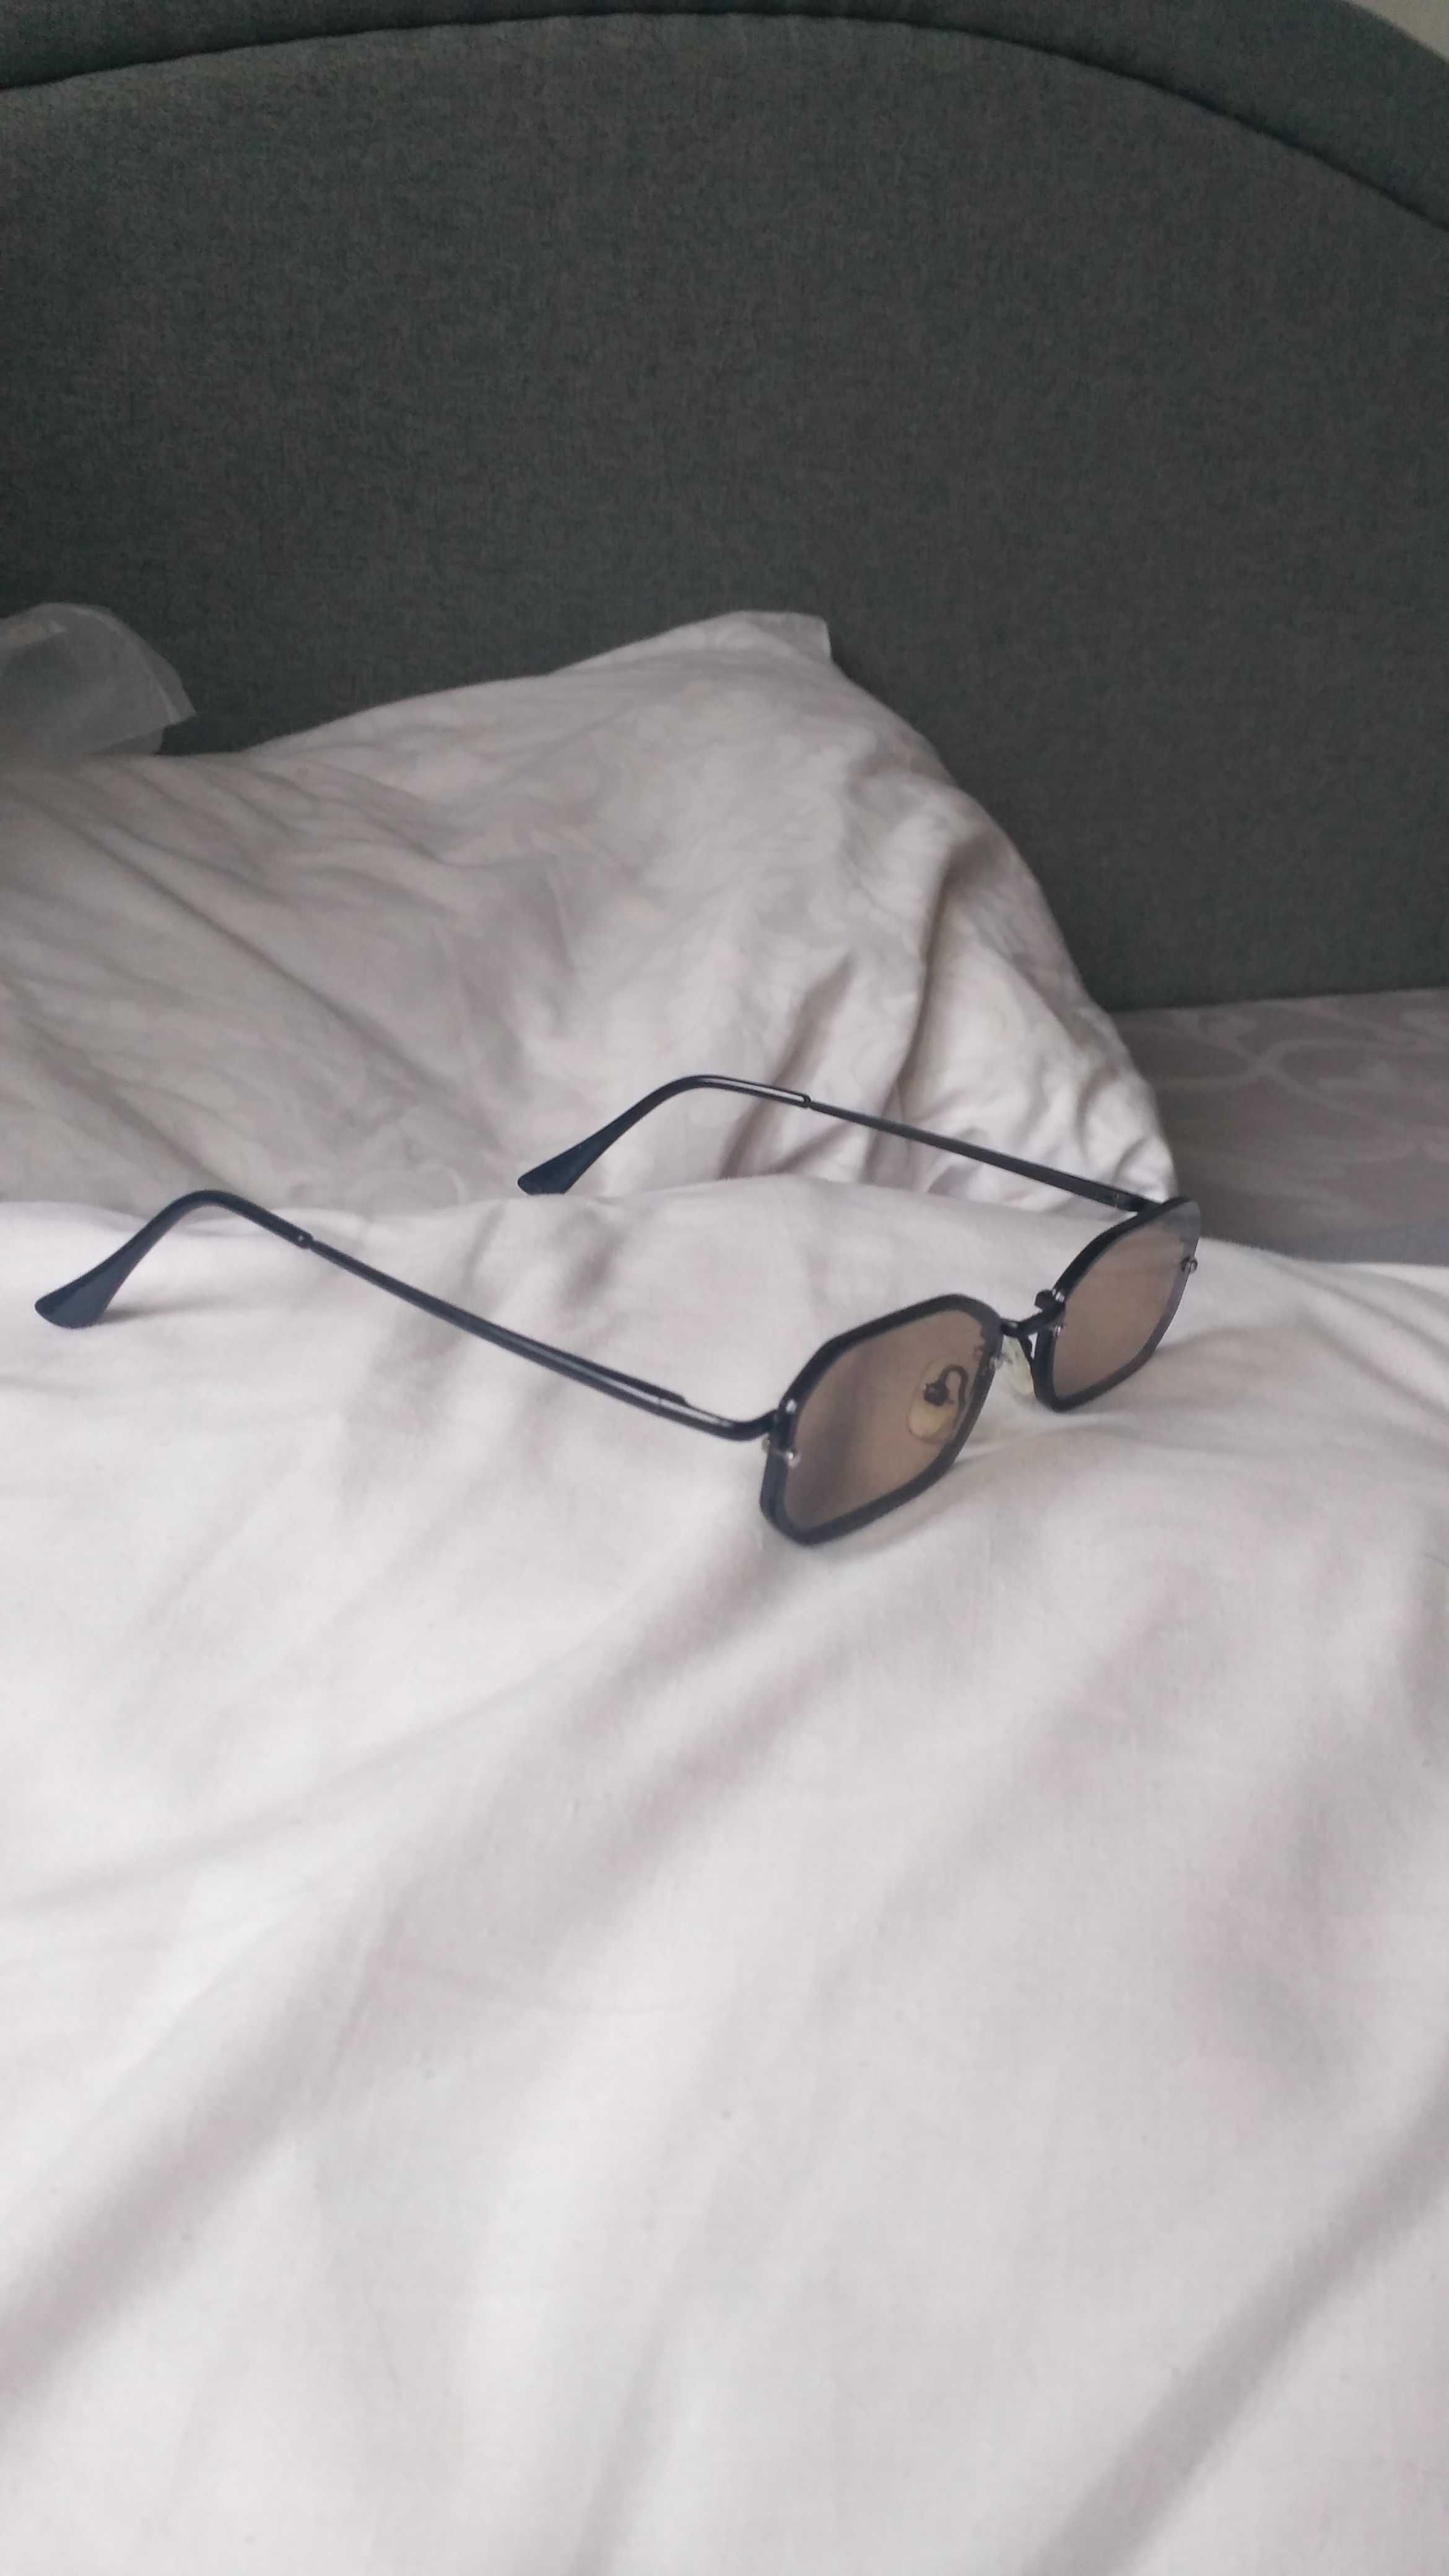 Солнцезащитные очки, узкие стекла, новые, высокий уф фильтр